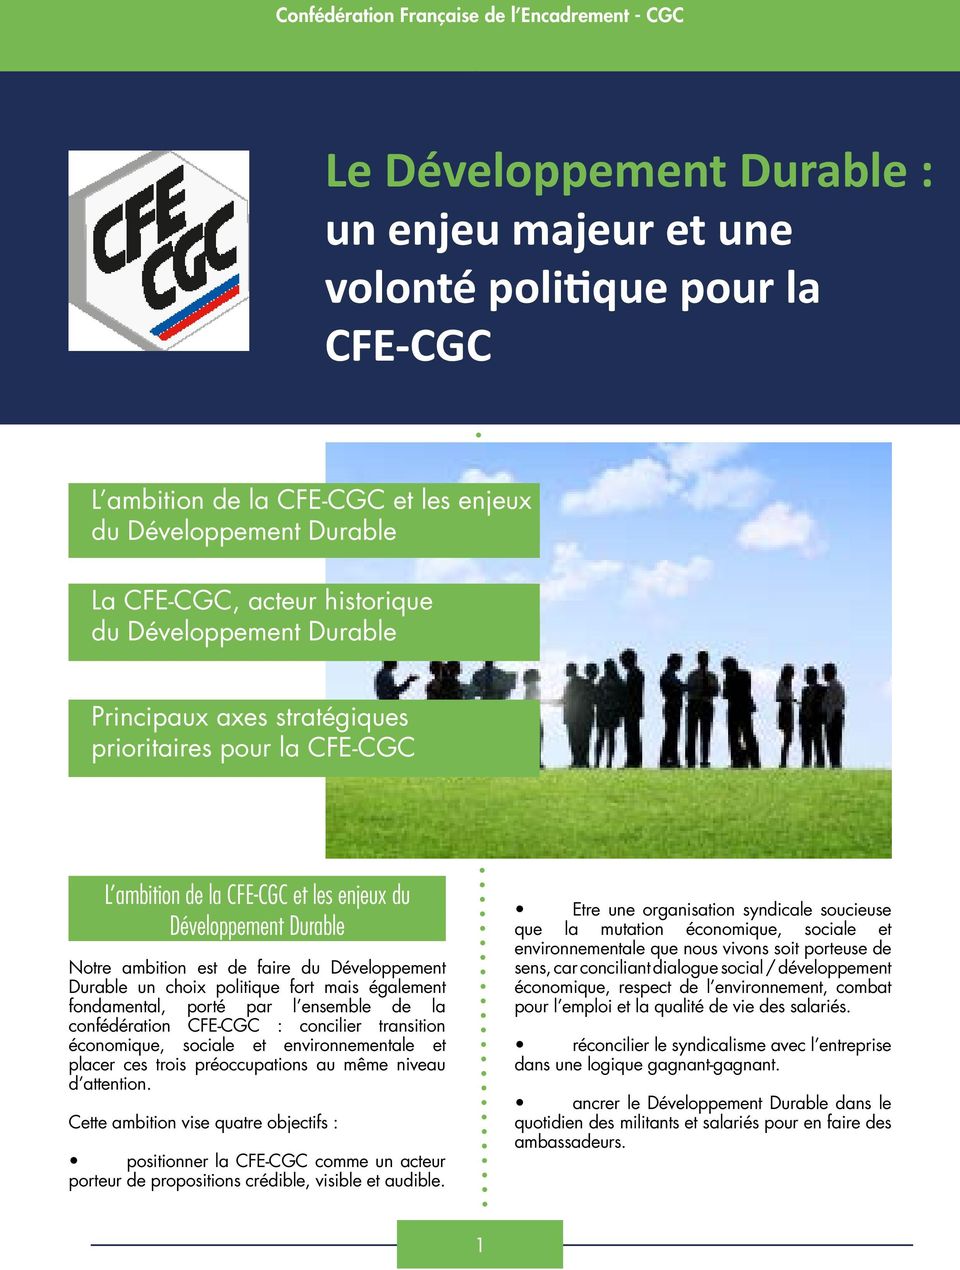 faire du Développement Durable un choix politique fort mais également fondamental, porté par l ensemble de la confédération CFE-CGC : concilier transition économique, sociale et environnementale et